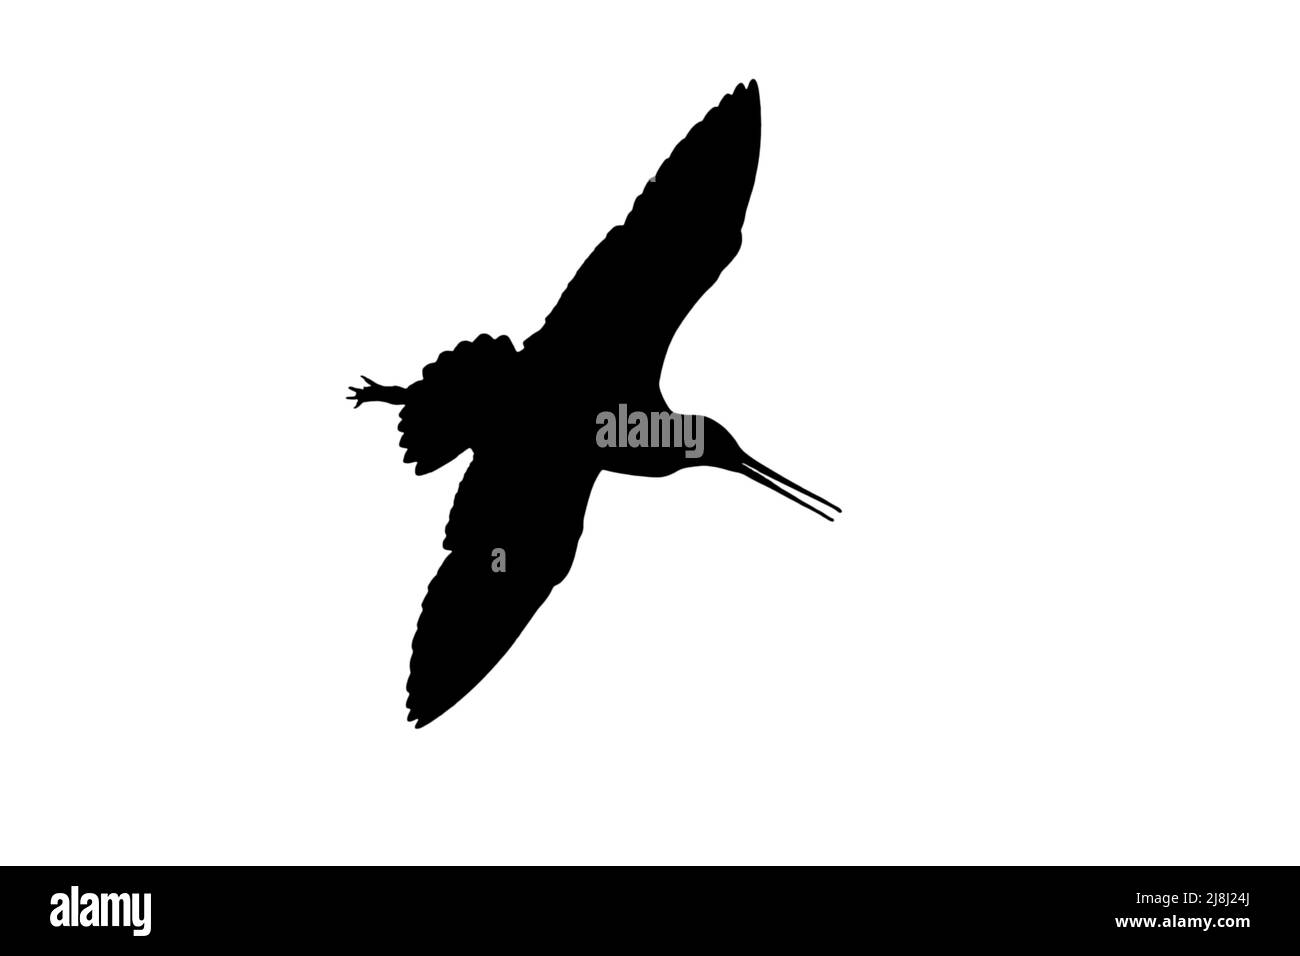 Silhouette de godwit à queue noire (Limosa limosa) en vol sur fond blanc pour montrer les formes des ailes, de la tête et de la queue Banque D'Images